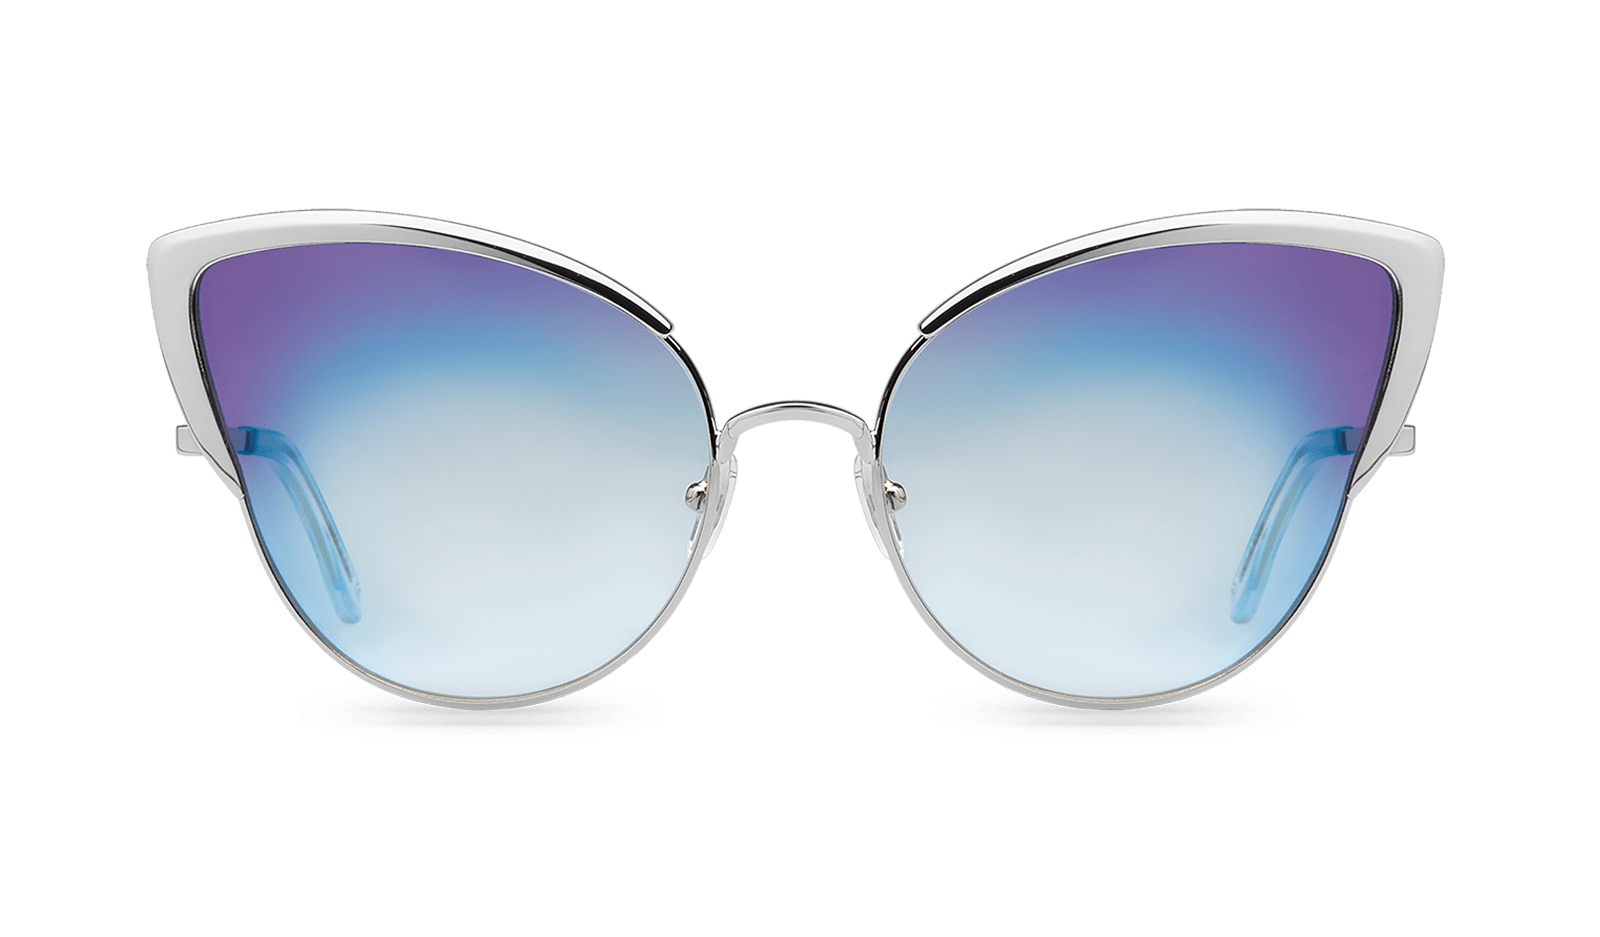 Очки солнцезащитные 7275 Blue. Sunfeel очки солнцезащитные. Солнцезащитные очки на белом фоне. Солнцезащитные очки с прозрачной оправой. Очки блюмарин